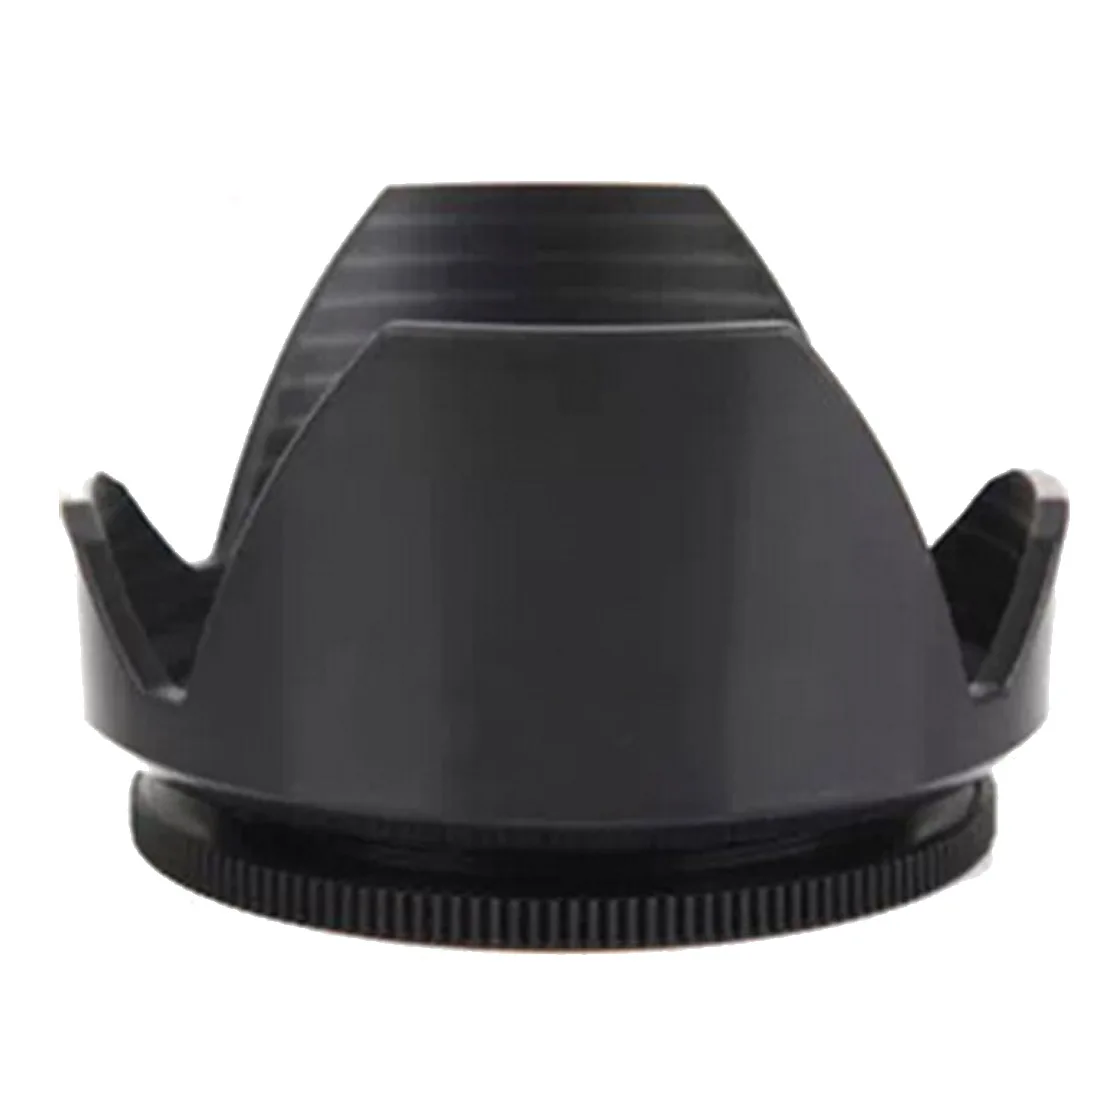 Бленда объектива D3200 D3100 D5200 D5300 бленда объектива камеры 52 мм байонет подходит для объектива nikon nikor AF-S DX 18-55 мм f/3,5-5,6G VR II 52